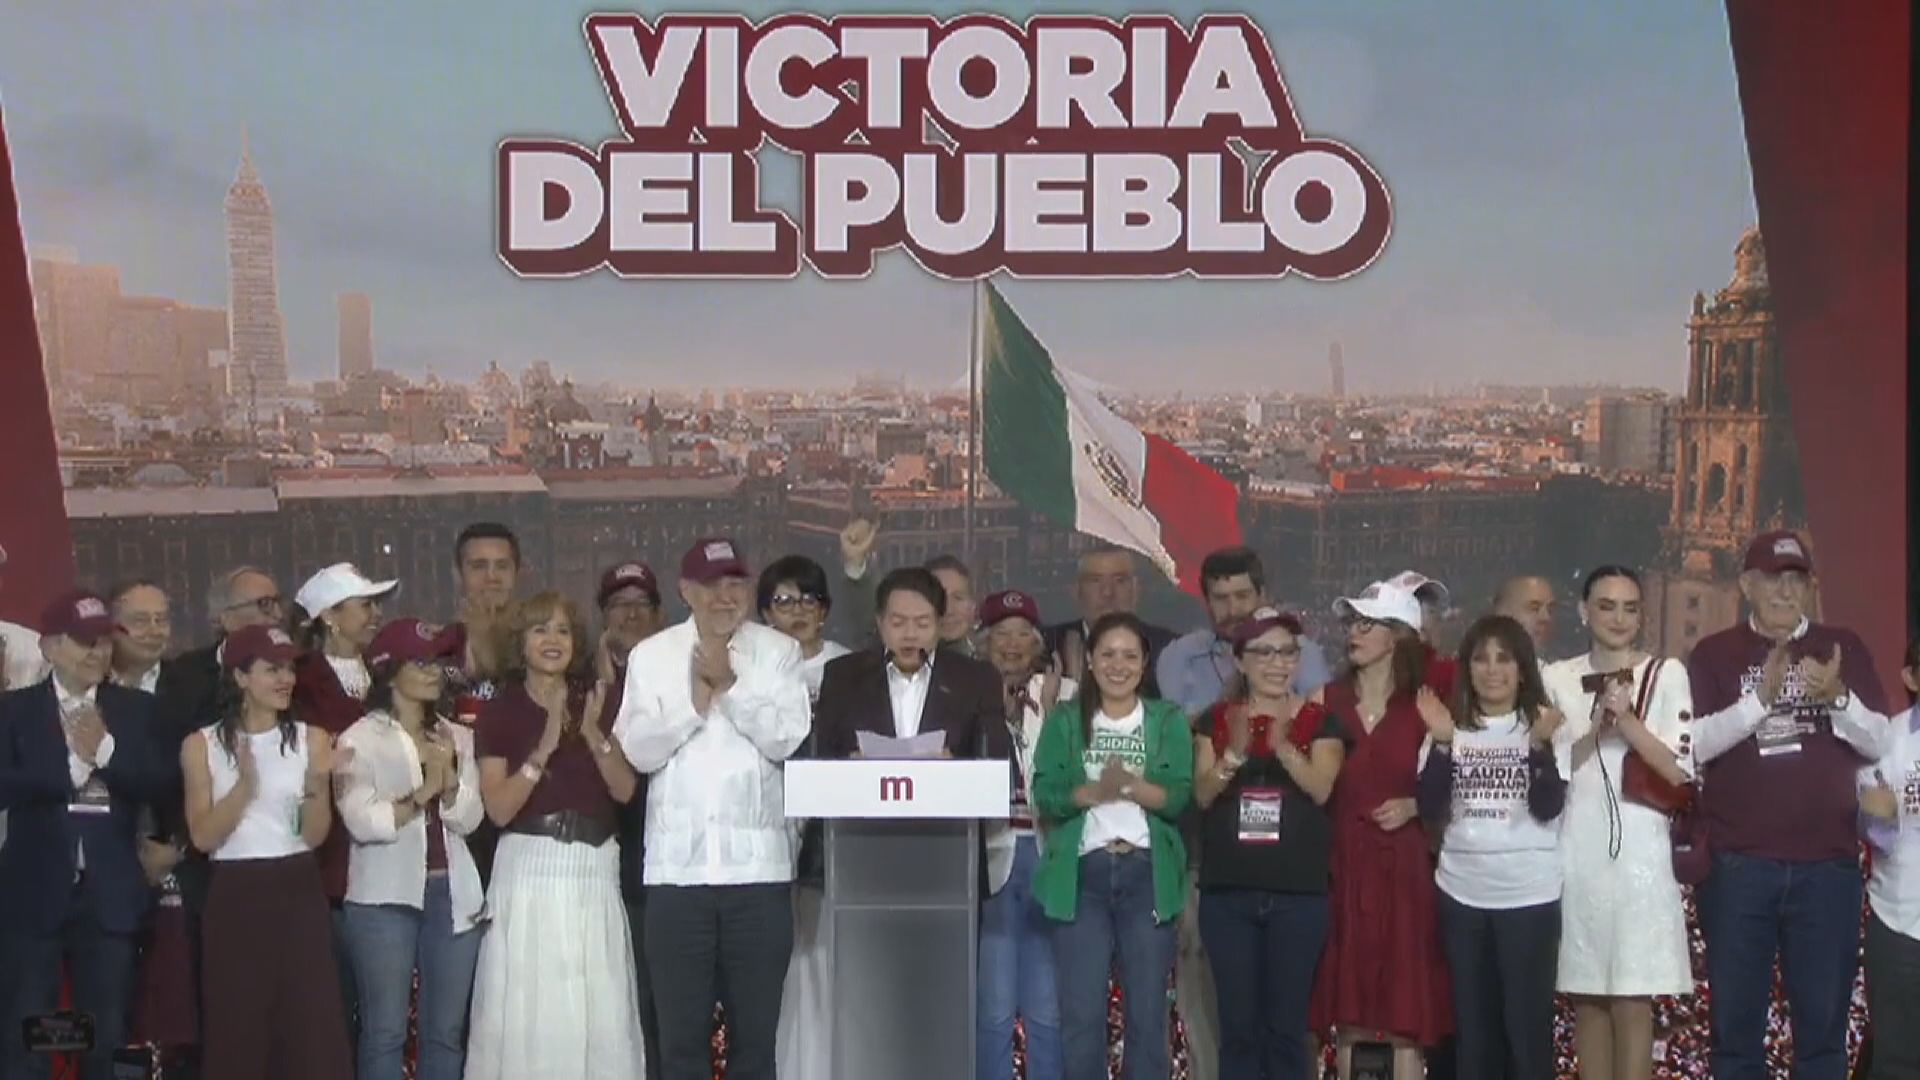 墨西哥大選投票結束 執政黨宣稱其候選人欣鮑姆獲勝